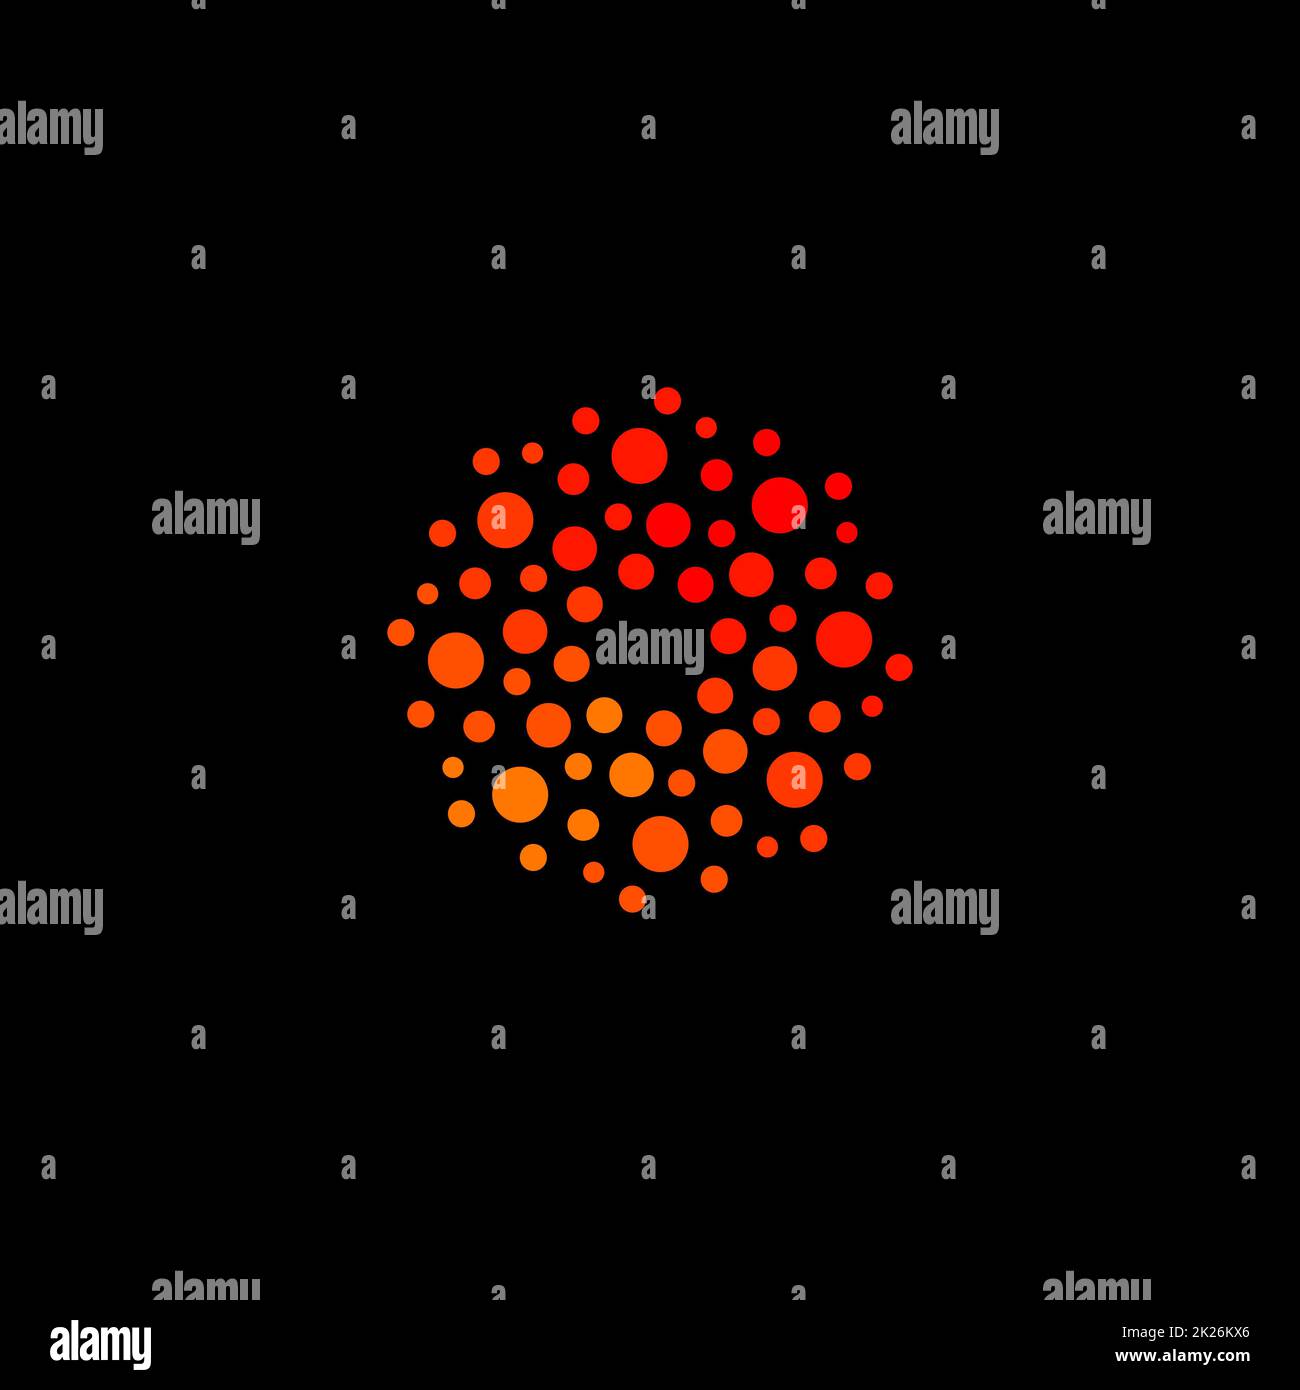 Isoliertes, abstraktes, rundes, orangefarbenes Logo, gepunktetes, stilisiertes Sonnenlogo auf schwarzem Hintergrund, Vektordarstellung Stockfoto